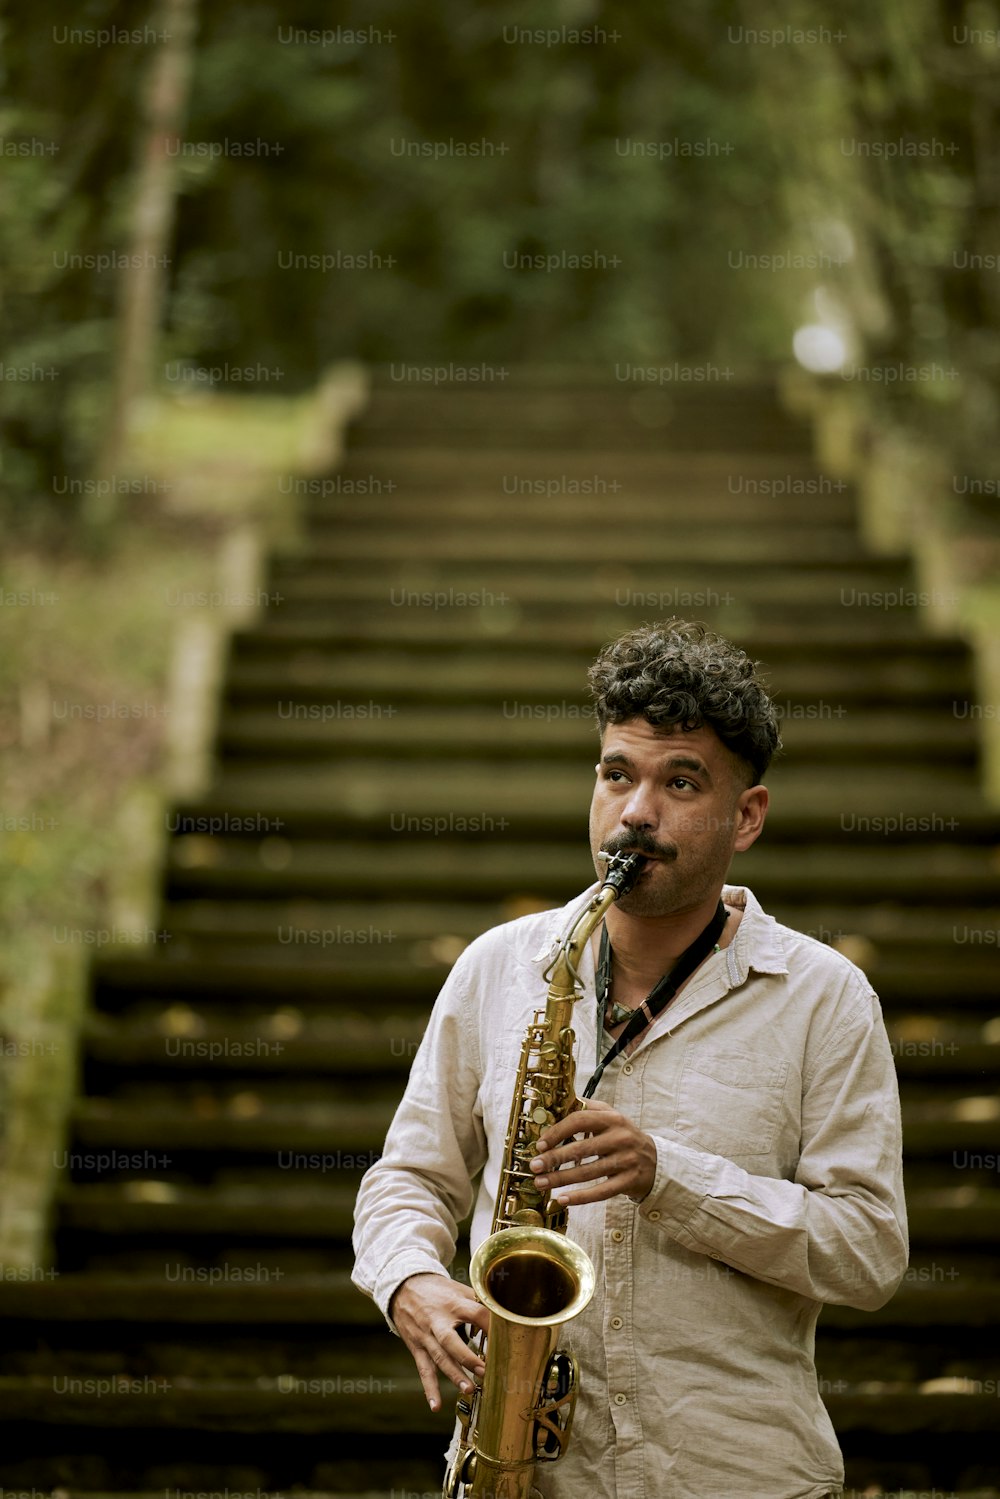 Un uomo che suona un sassofono davanti a una rampa di scale